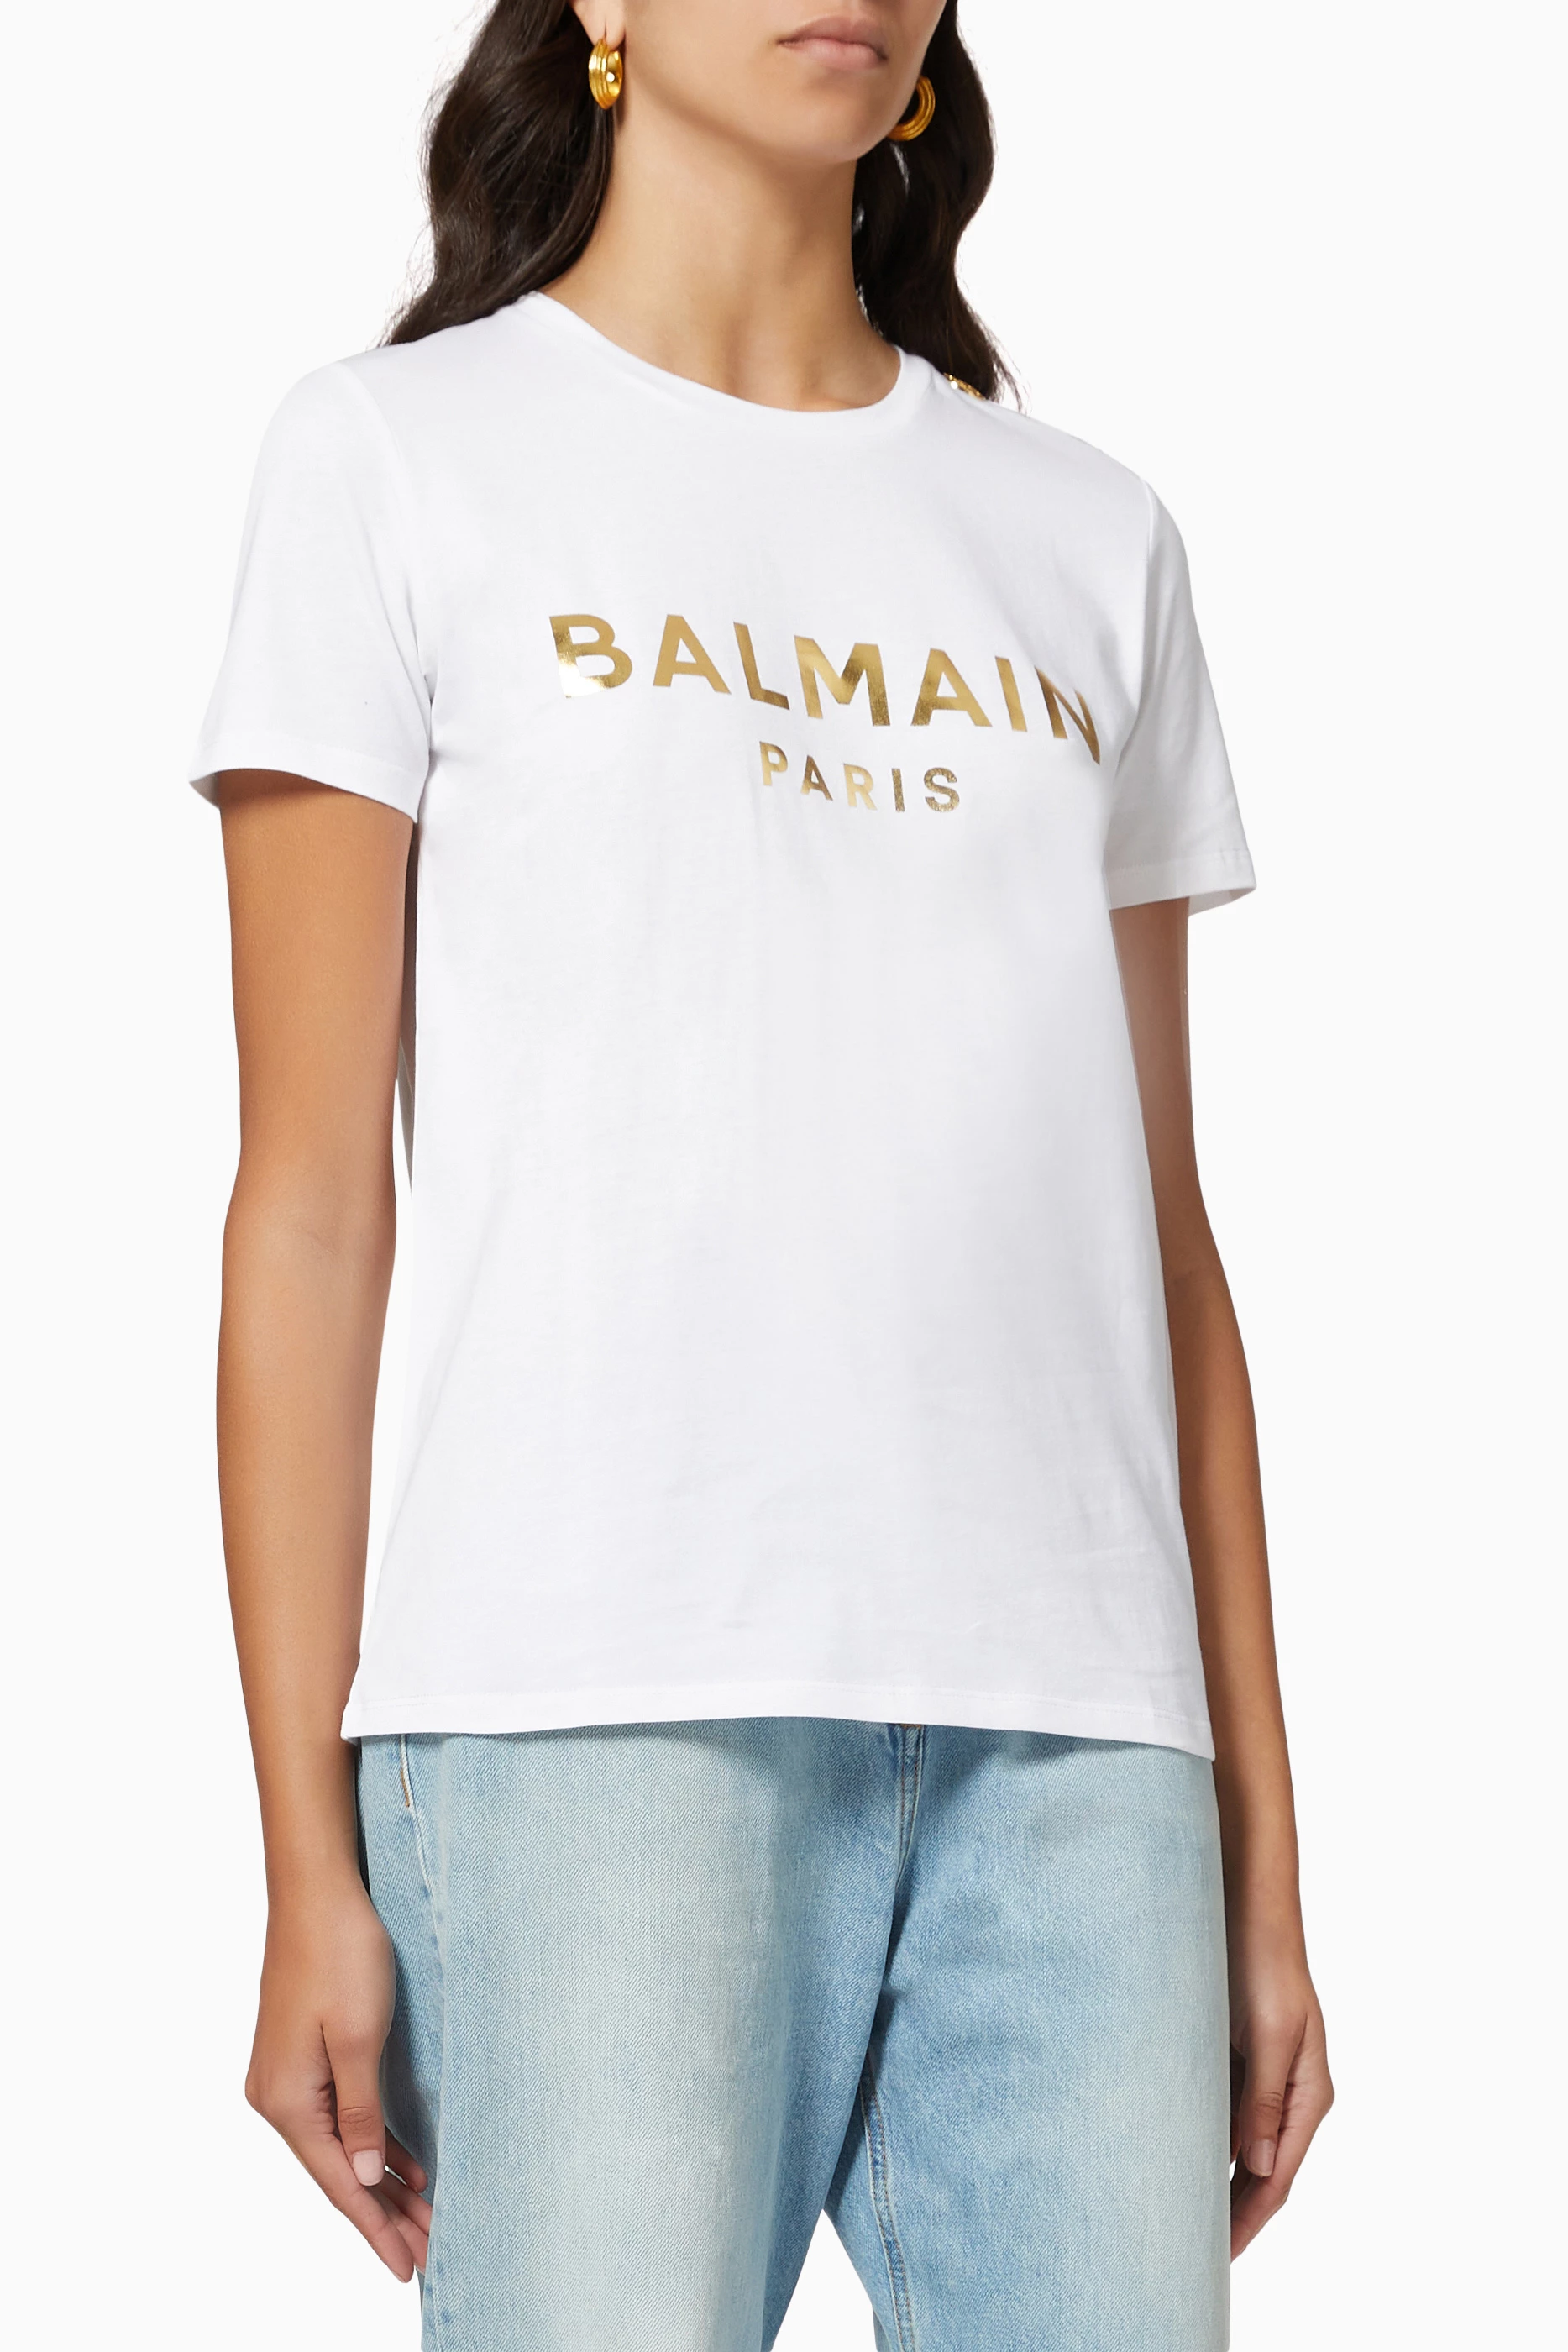 Buy Balmain Balmain Button-Details T-shirt in Cotton Jersey for | Ounass UAE